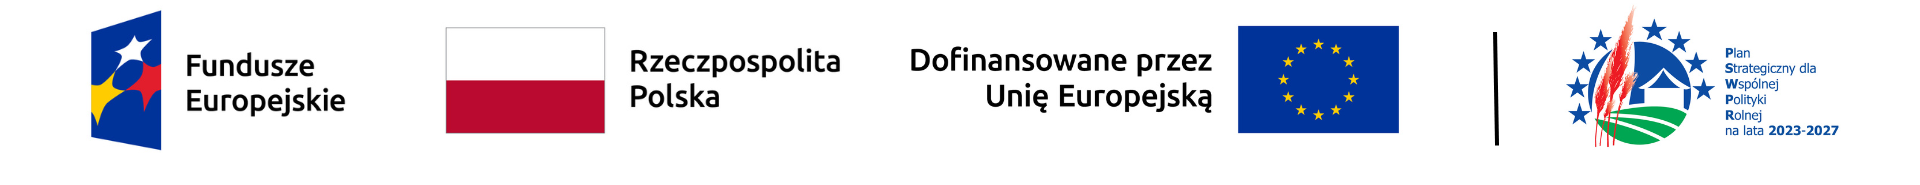 Logotypy funduszy europejskich, Rzeczpospolitej Polskiej, Unii Europejskiej i PSWPR